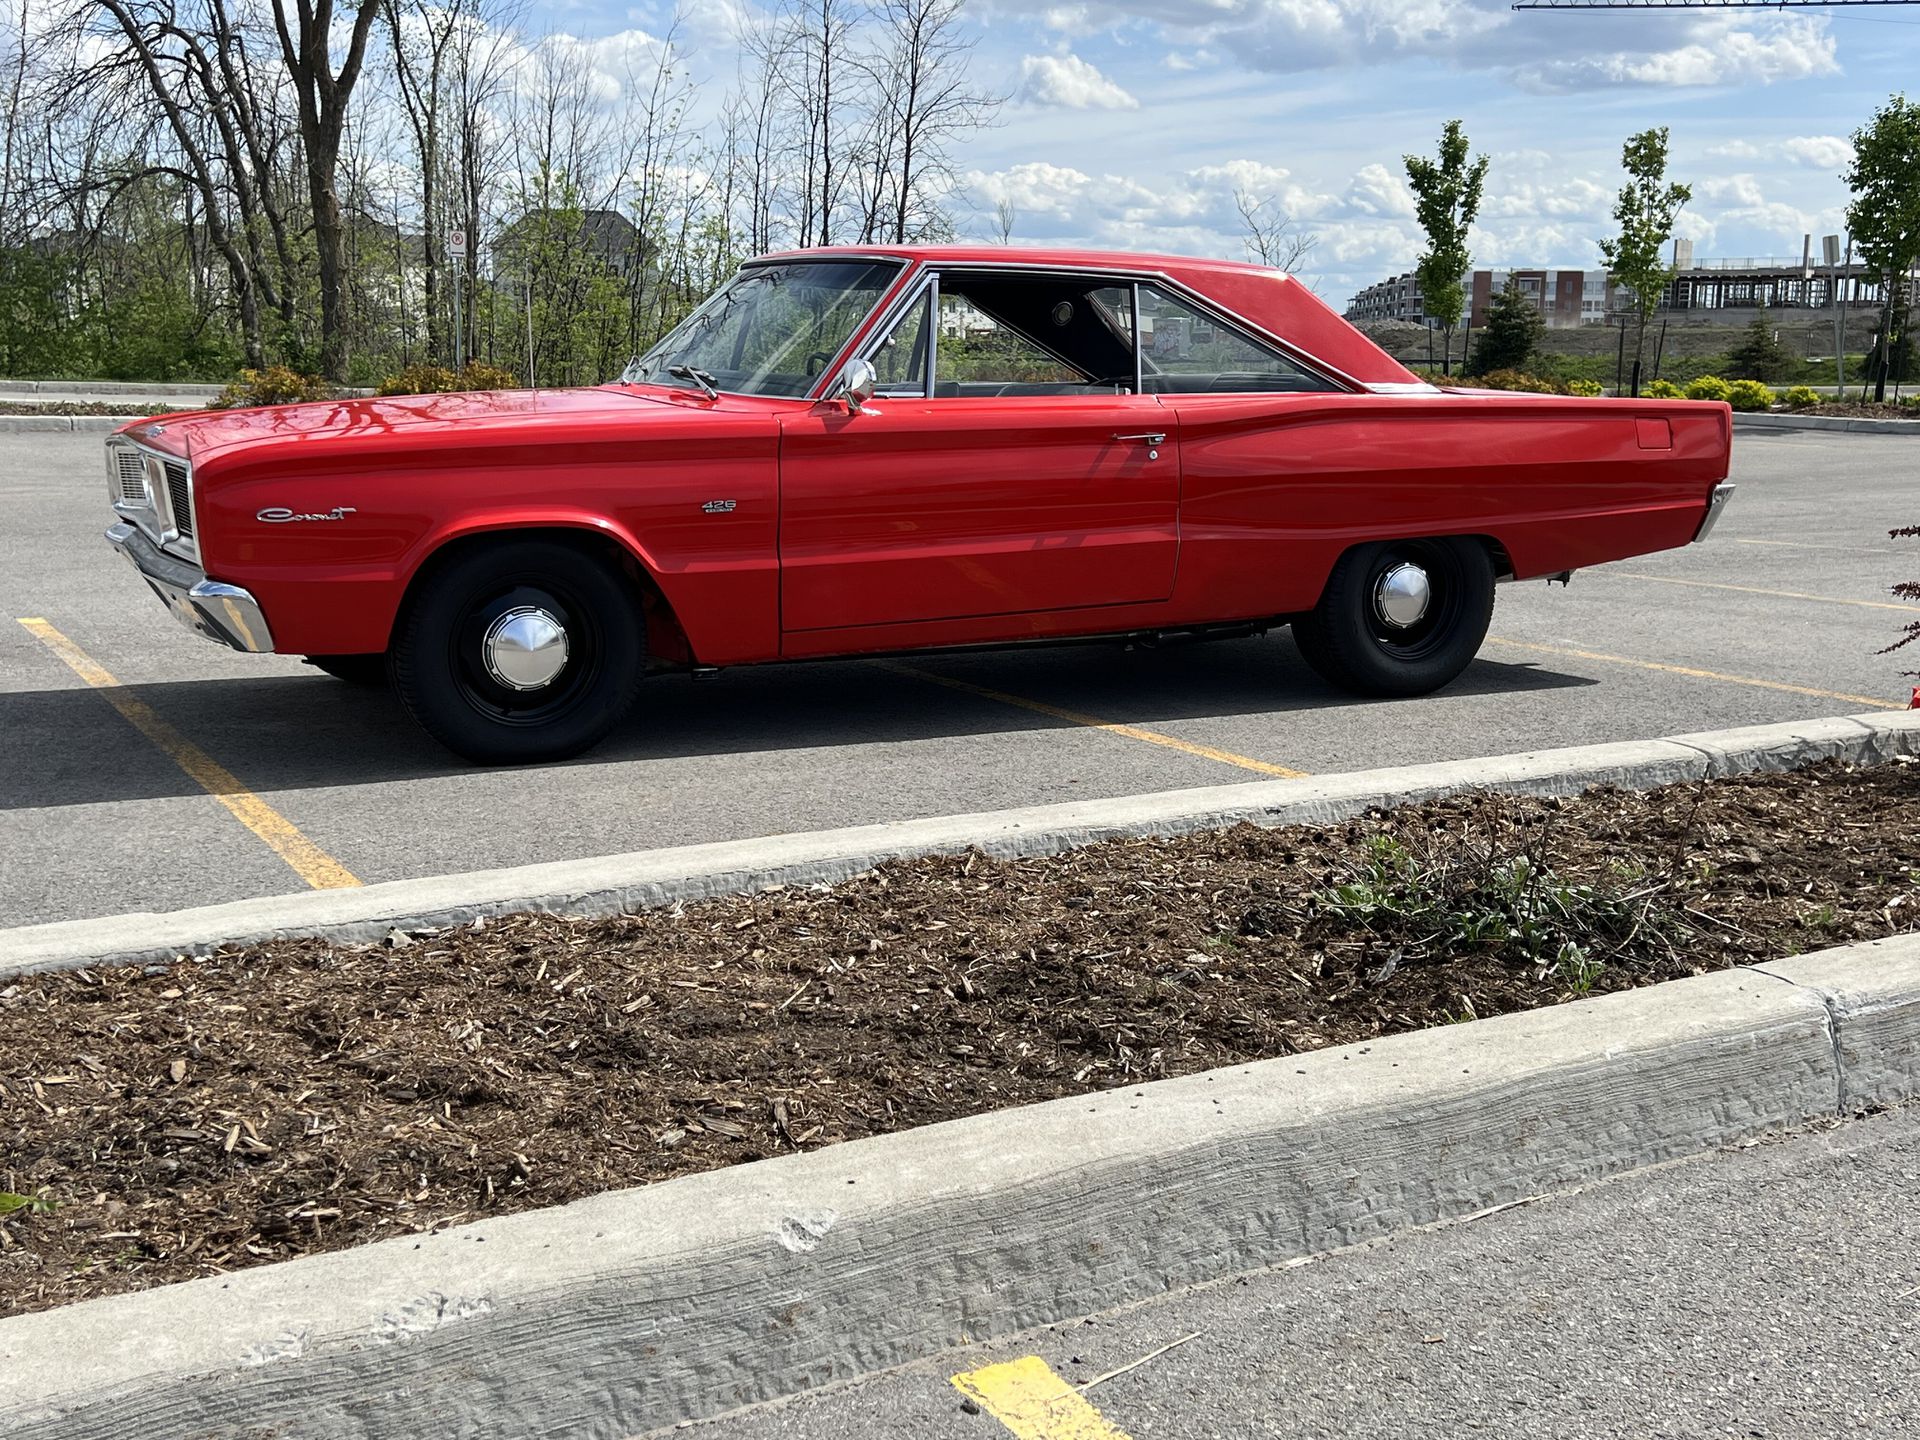 The 1966 Dodge Coronet